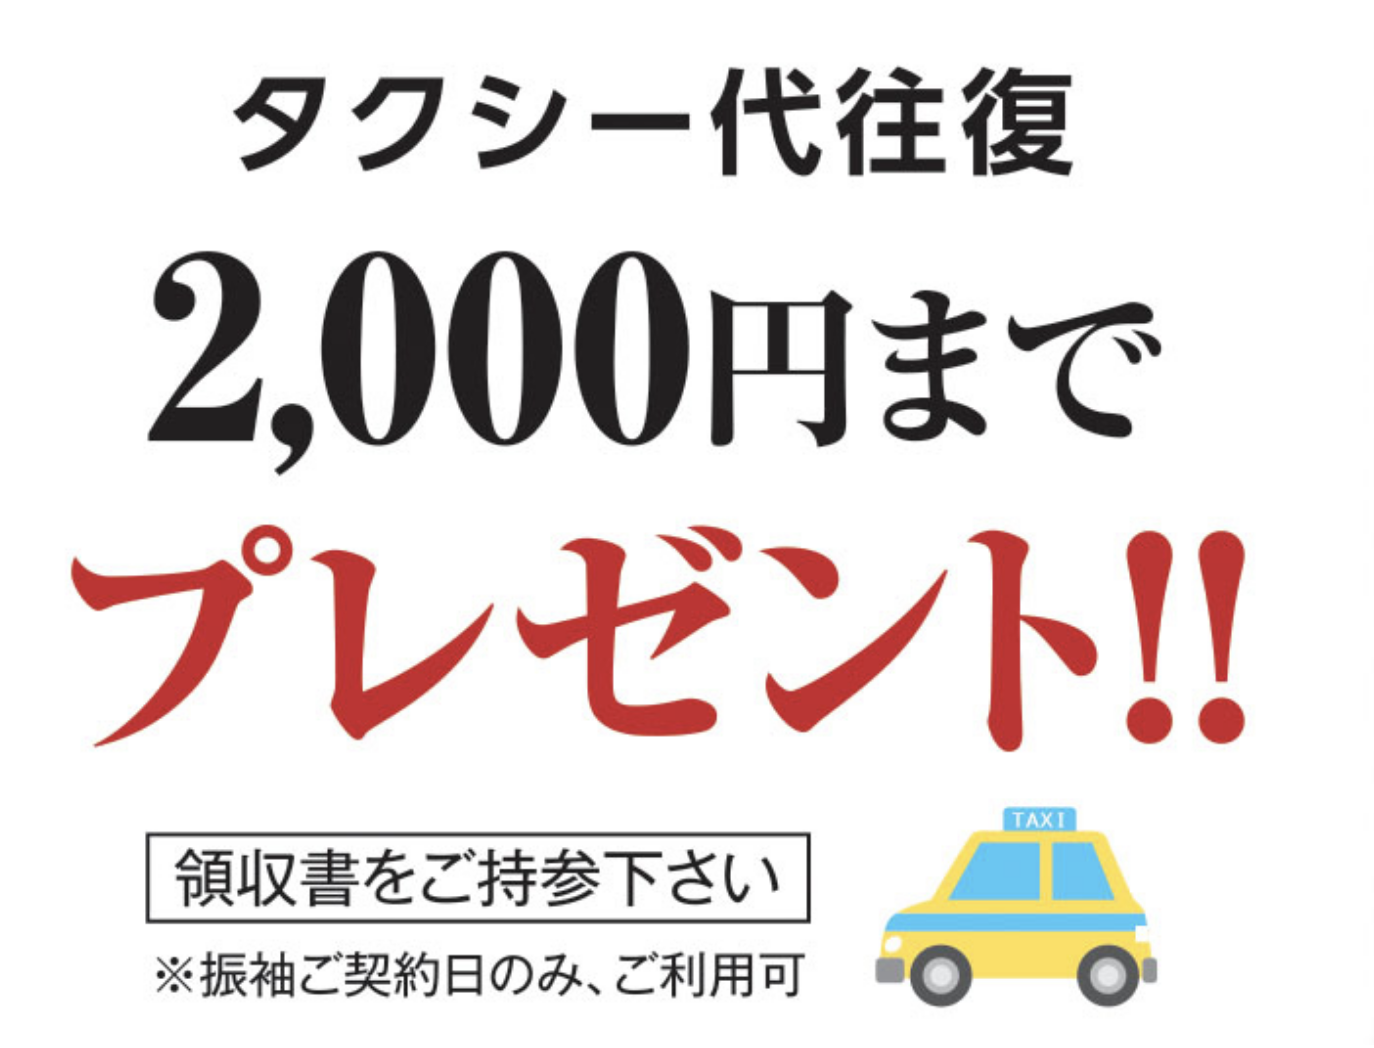 タクシー代往復 2,000円までプレゼント